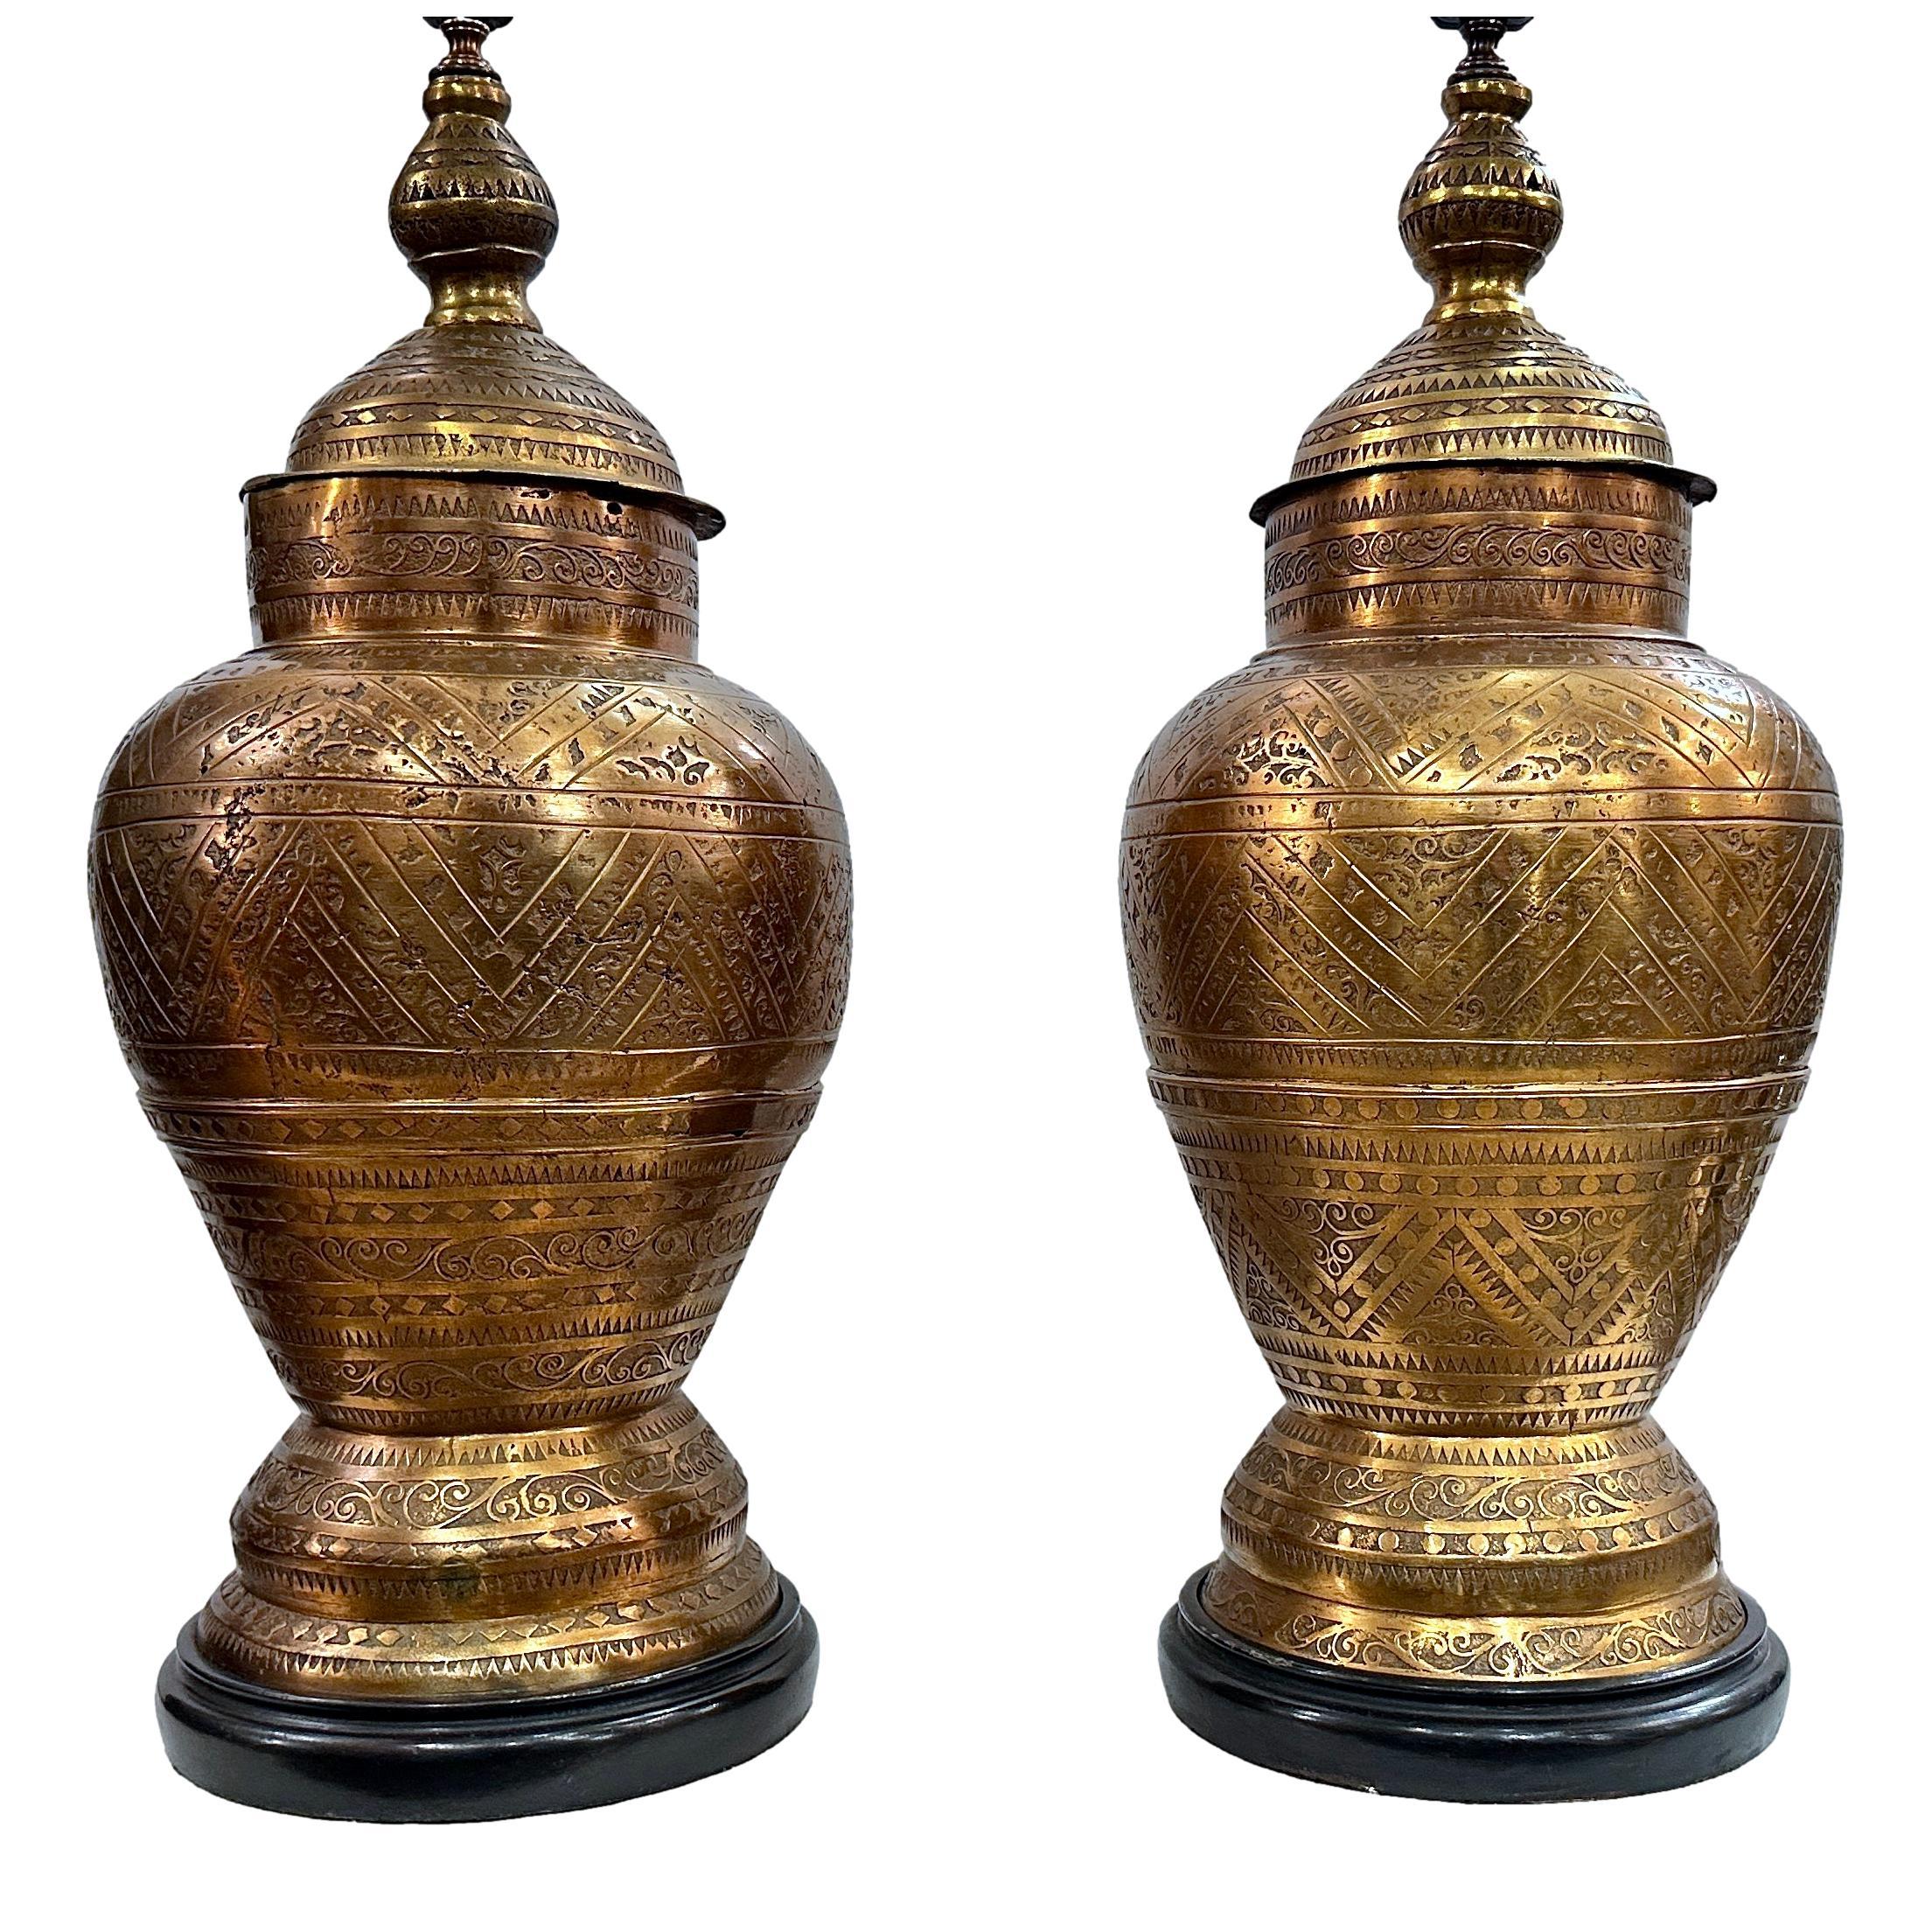 Paire de lampes marocaines en bronze gravé et coulé, datant des années 1960, avec patine d'origine. 

Mesures :
Hauteur du corps : 27